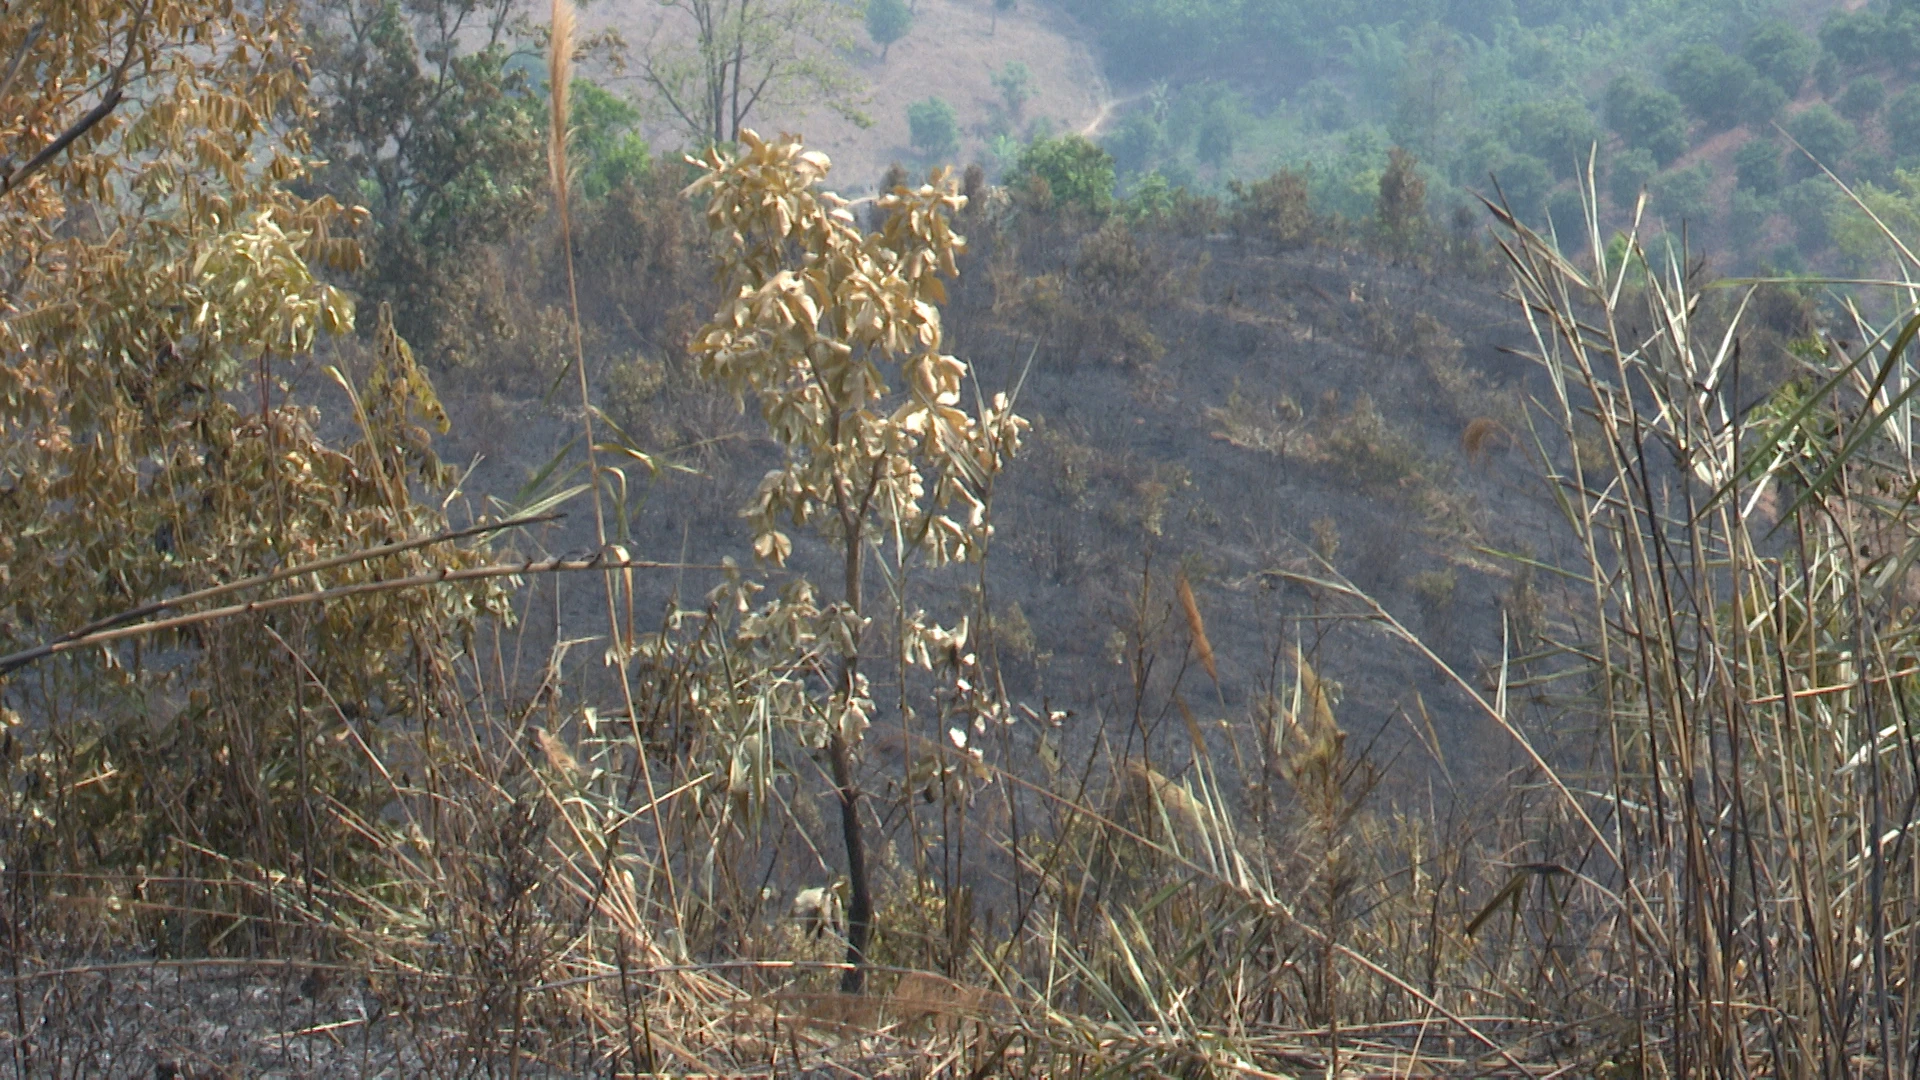 Người dân đốt rẫy làm cháy rừng ở Kon Tum